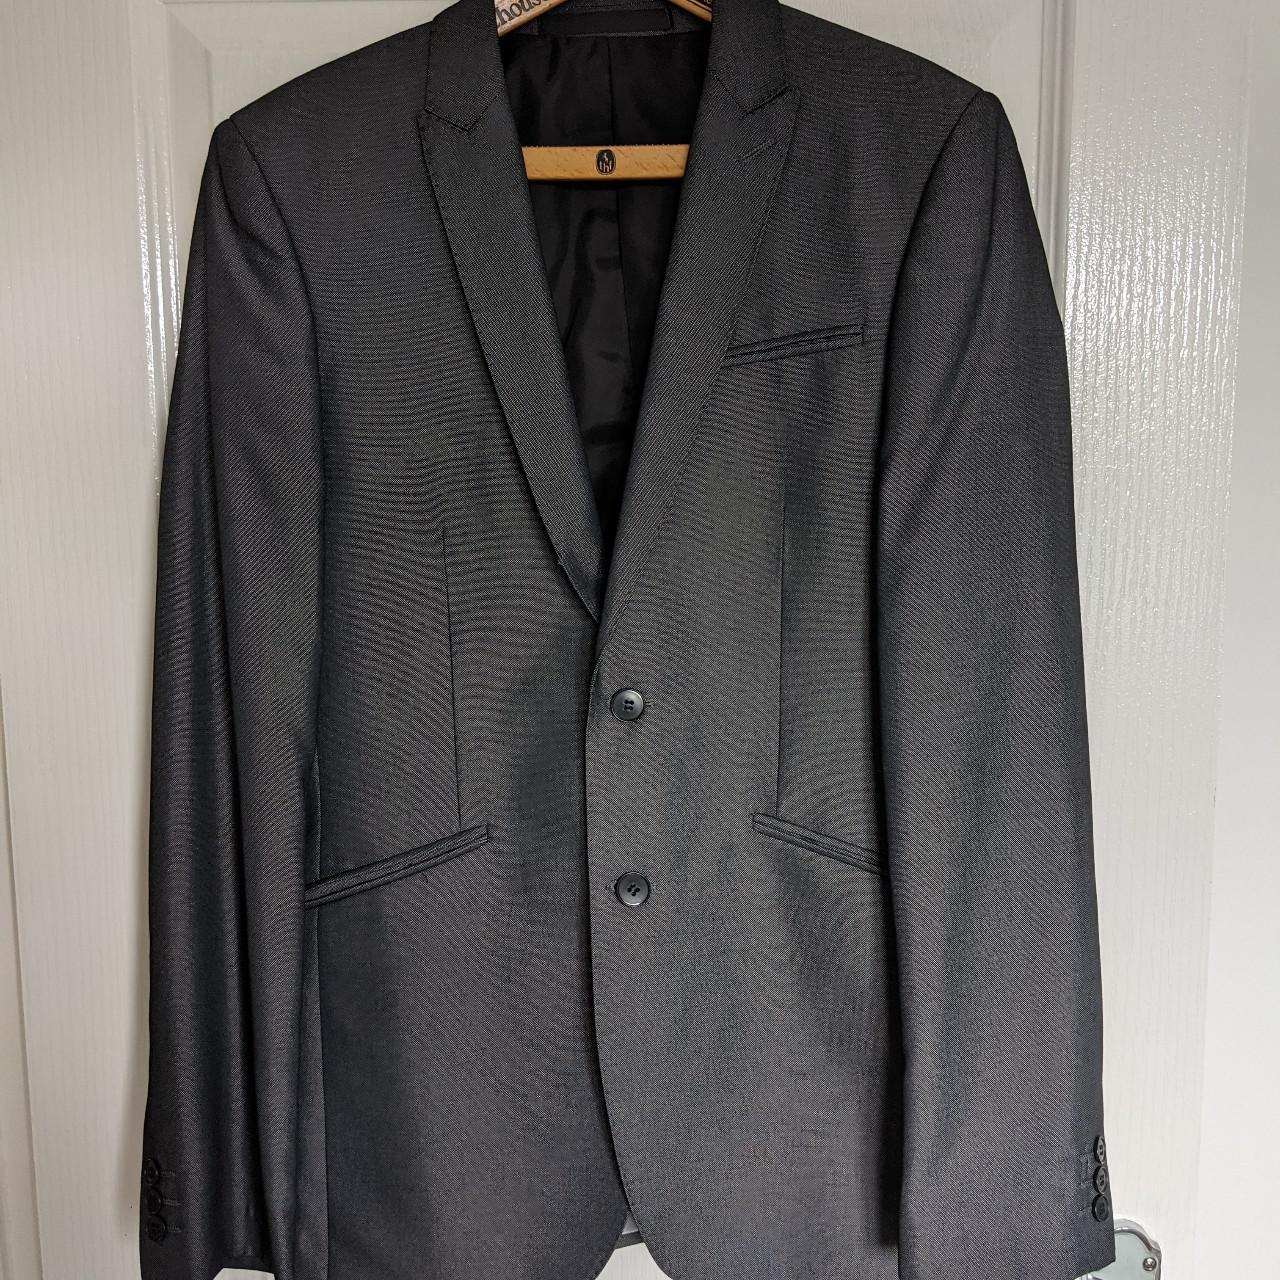 Marks and Spencers Suit Set. Jacket -... - Depop